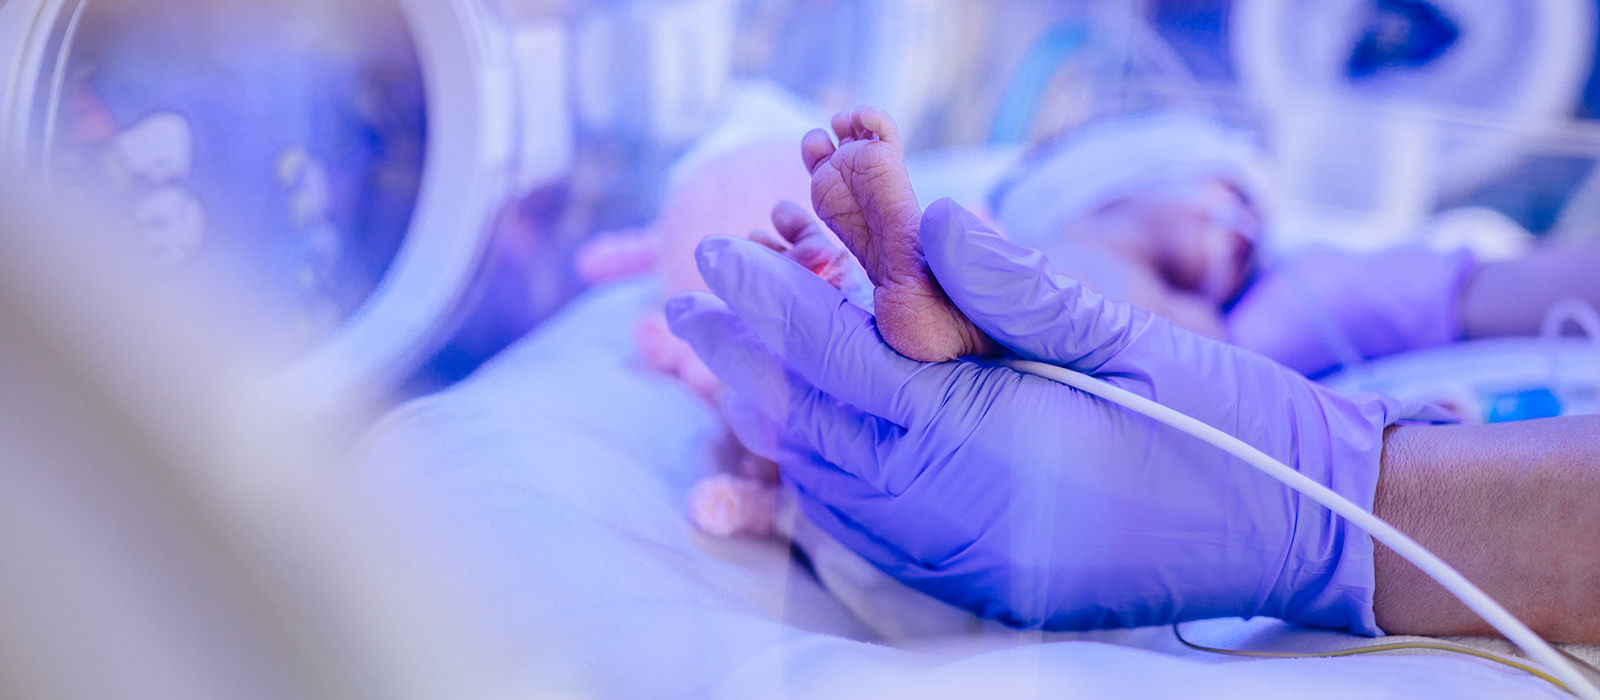 Lege på sykehus holder en babys fot